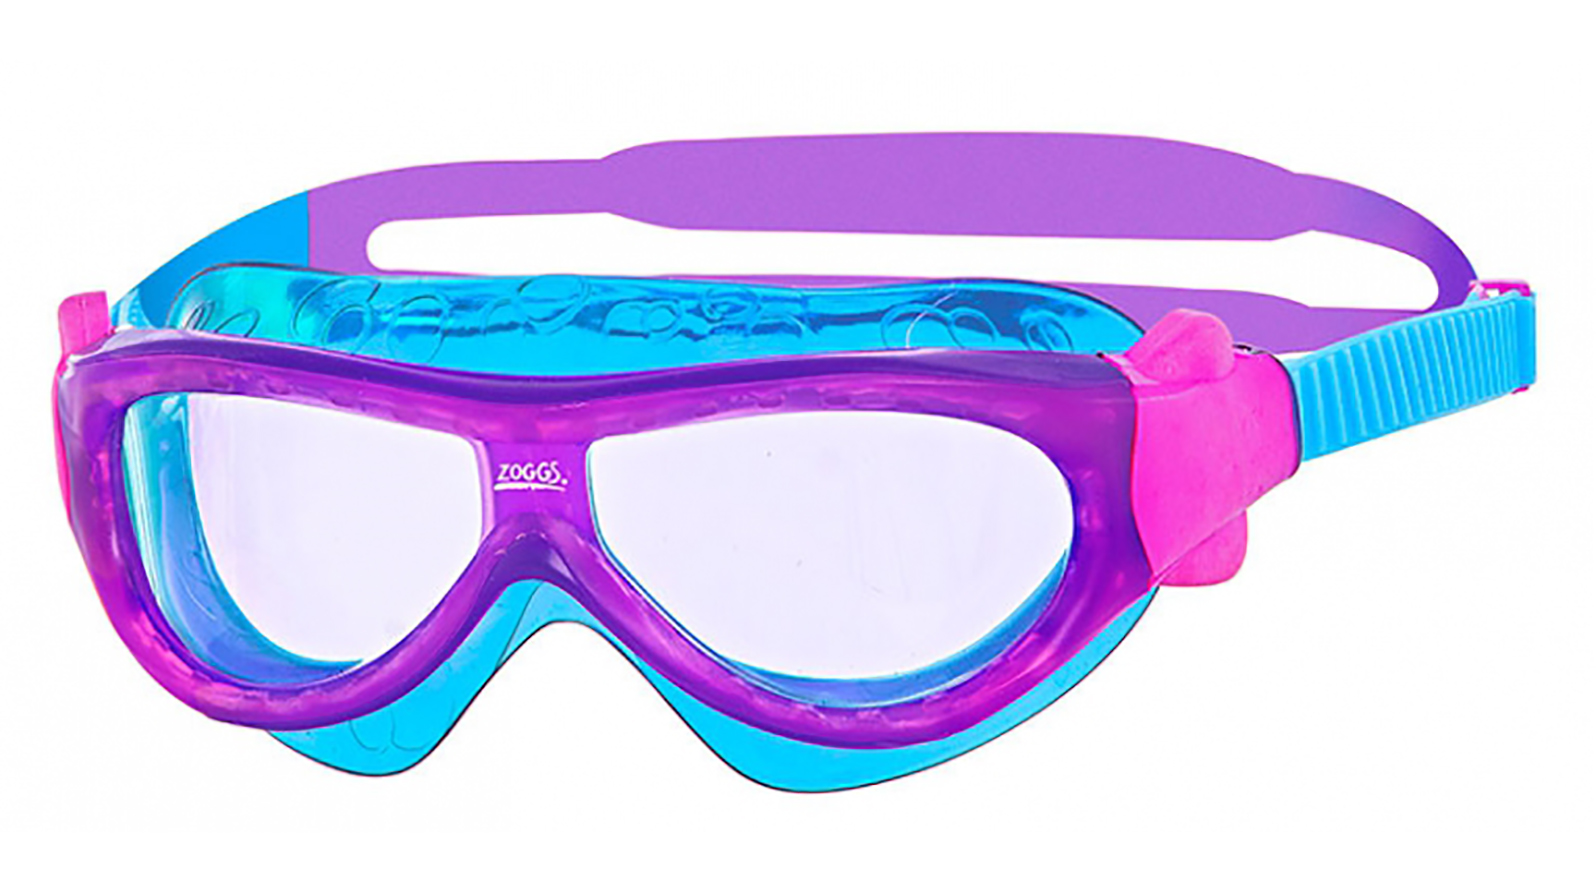 ZOGGS Очки-маска для плавания Phantom Kids (фиолетовый/голубой) zoggs очки маска для плавания phantom kids фиолетовый голубой